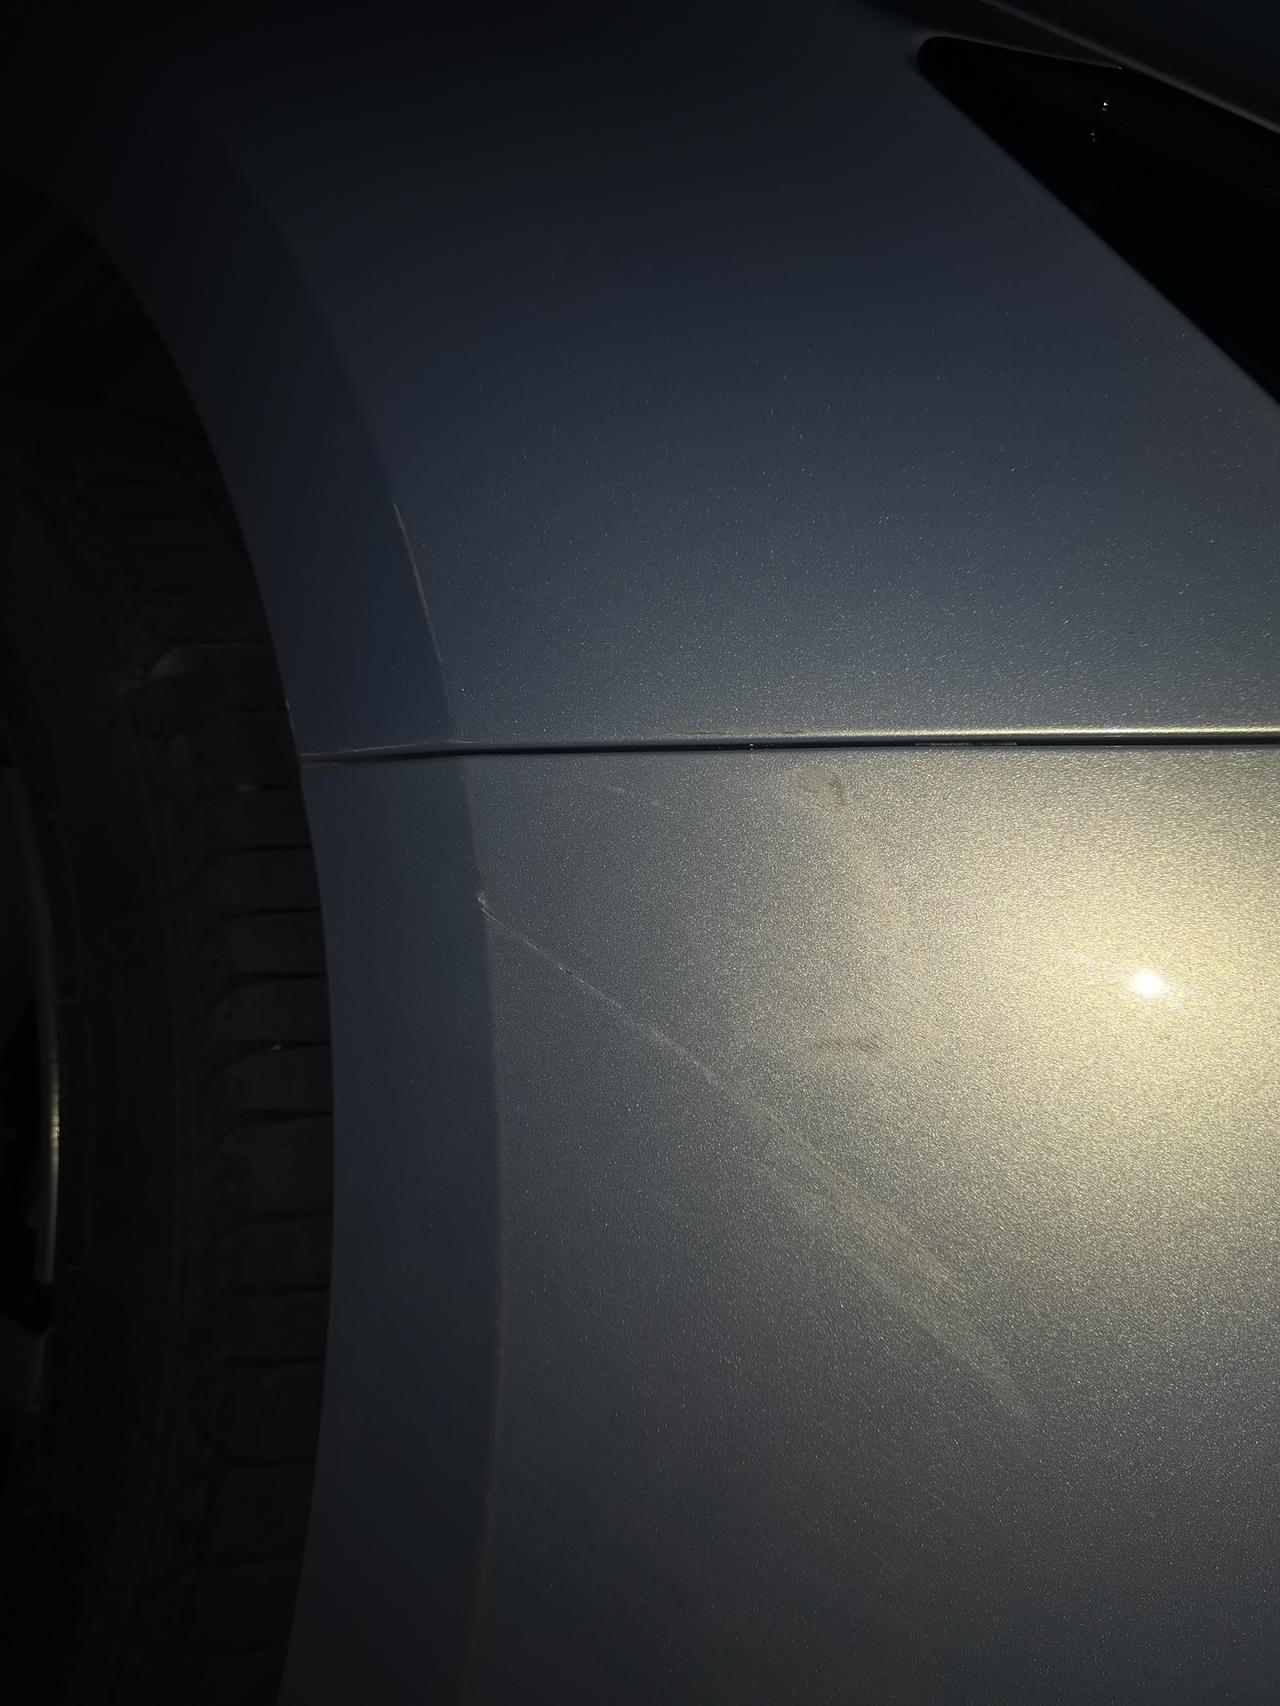 埃安AION S 车以后都不考虑卖，车身花了。是考虑原车漆还是重新喷漆车门上还有一个大的刮痕